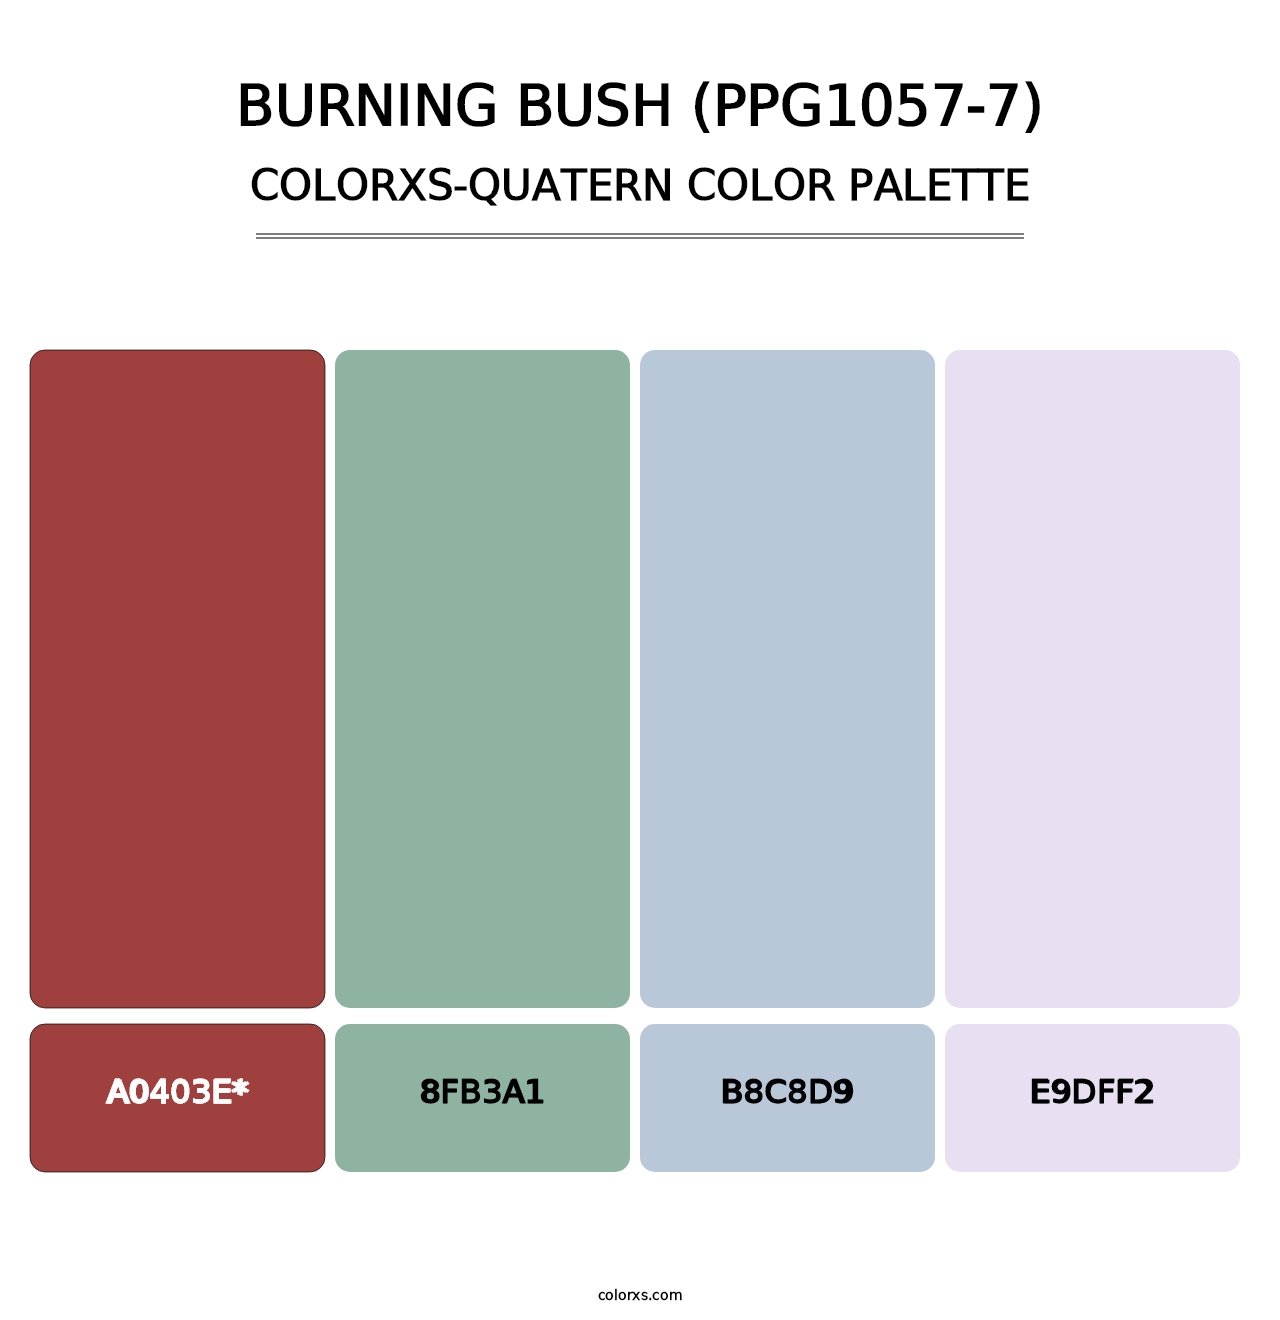 Burning Bush (PPG1057-7) - Colorxs Quatern Palette